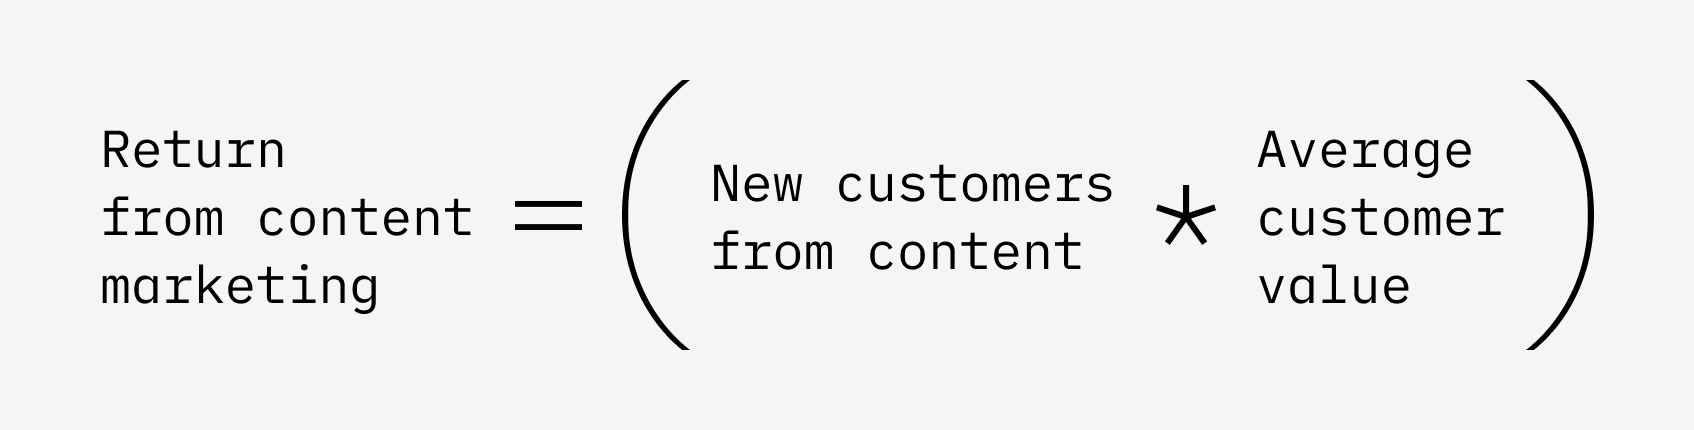 Pengembalian dari pemasaran konten = (Pelanggan baru dari konten * ACV)